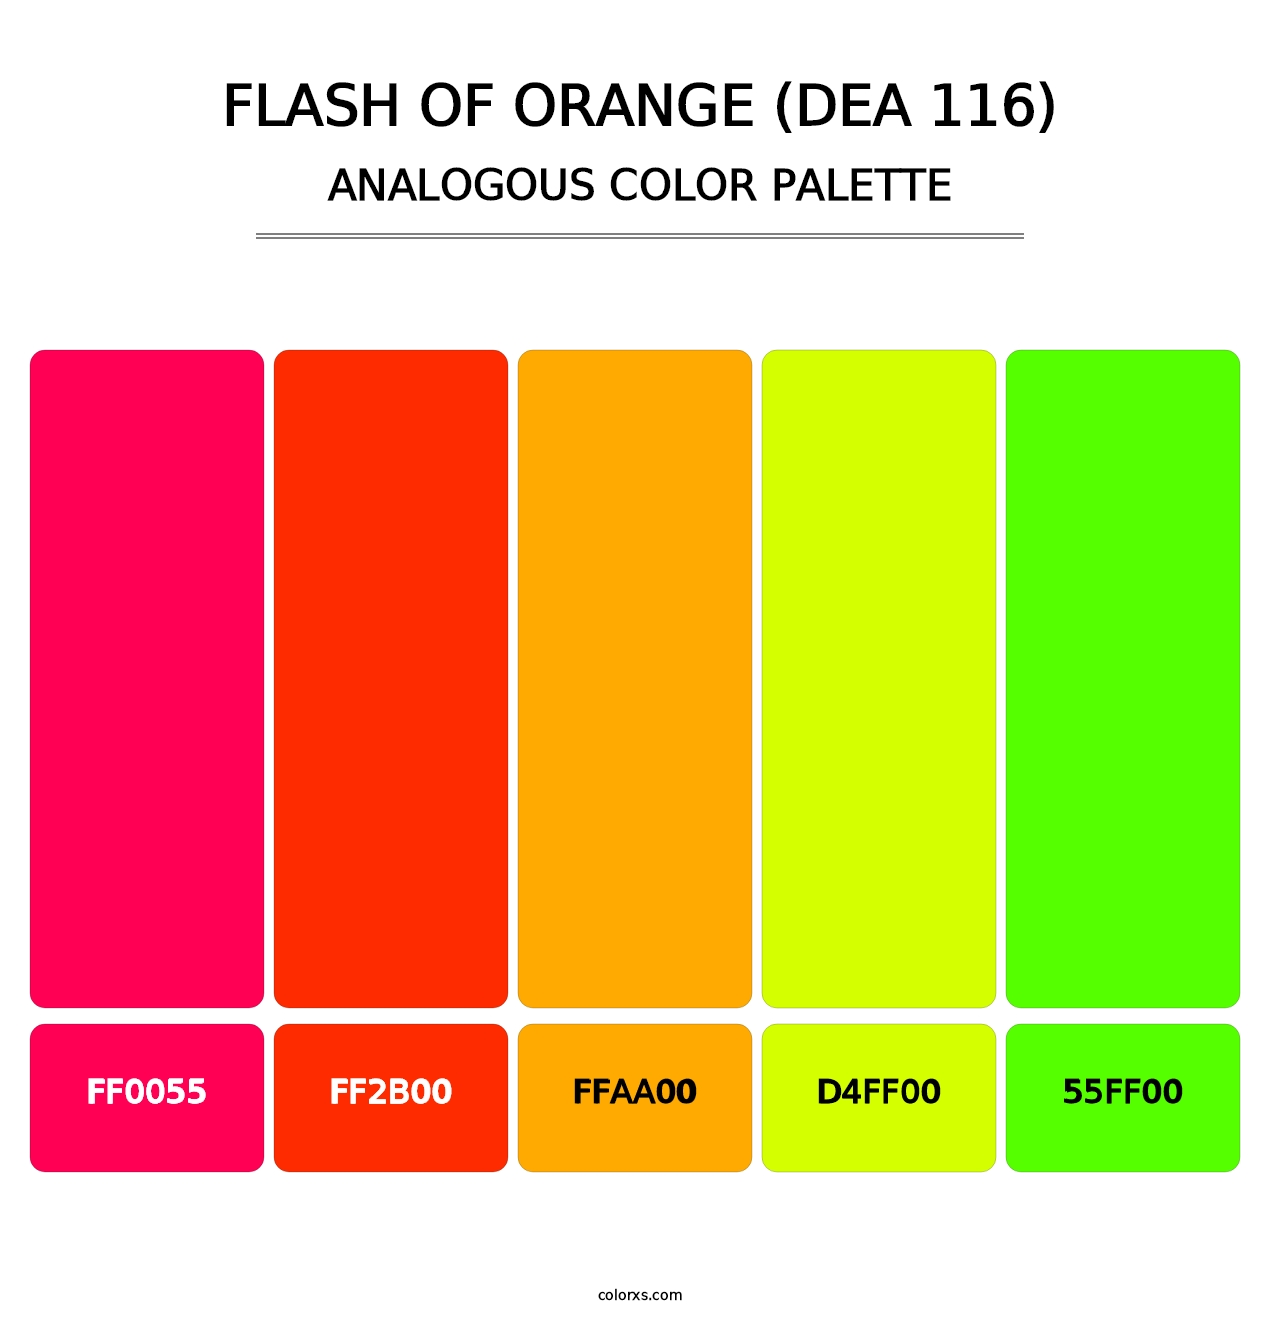 Flash of Orange (DEA 116) - Analogous Color Palette